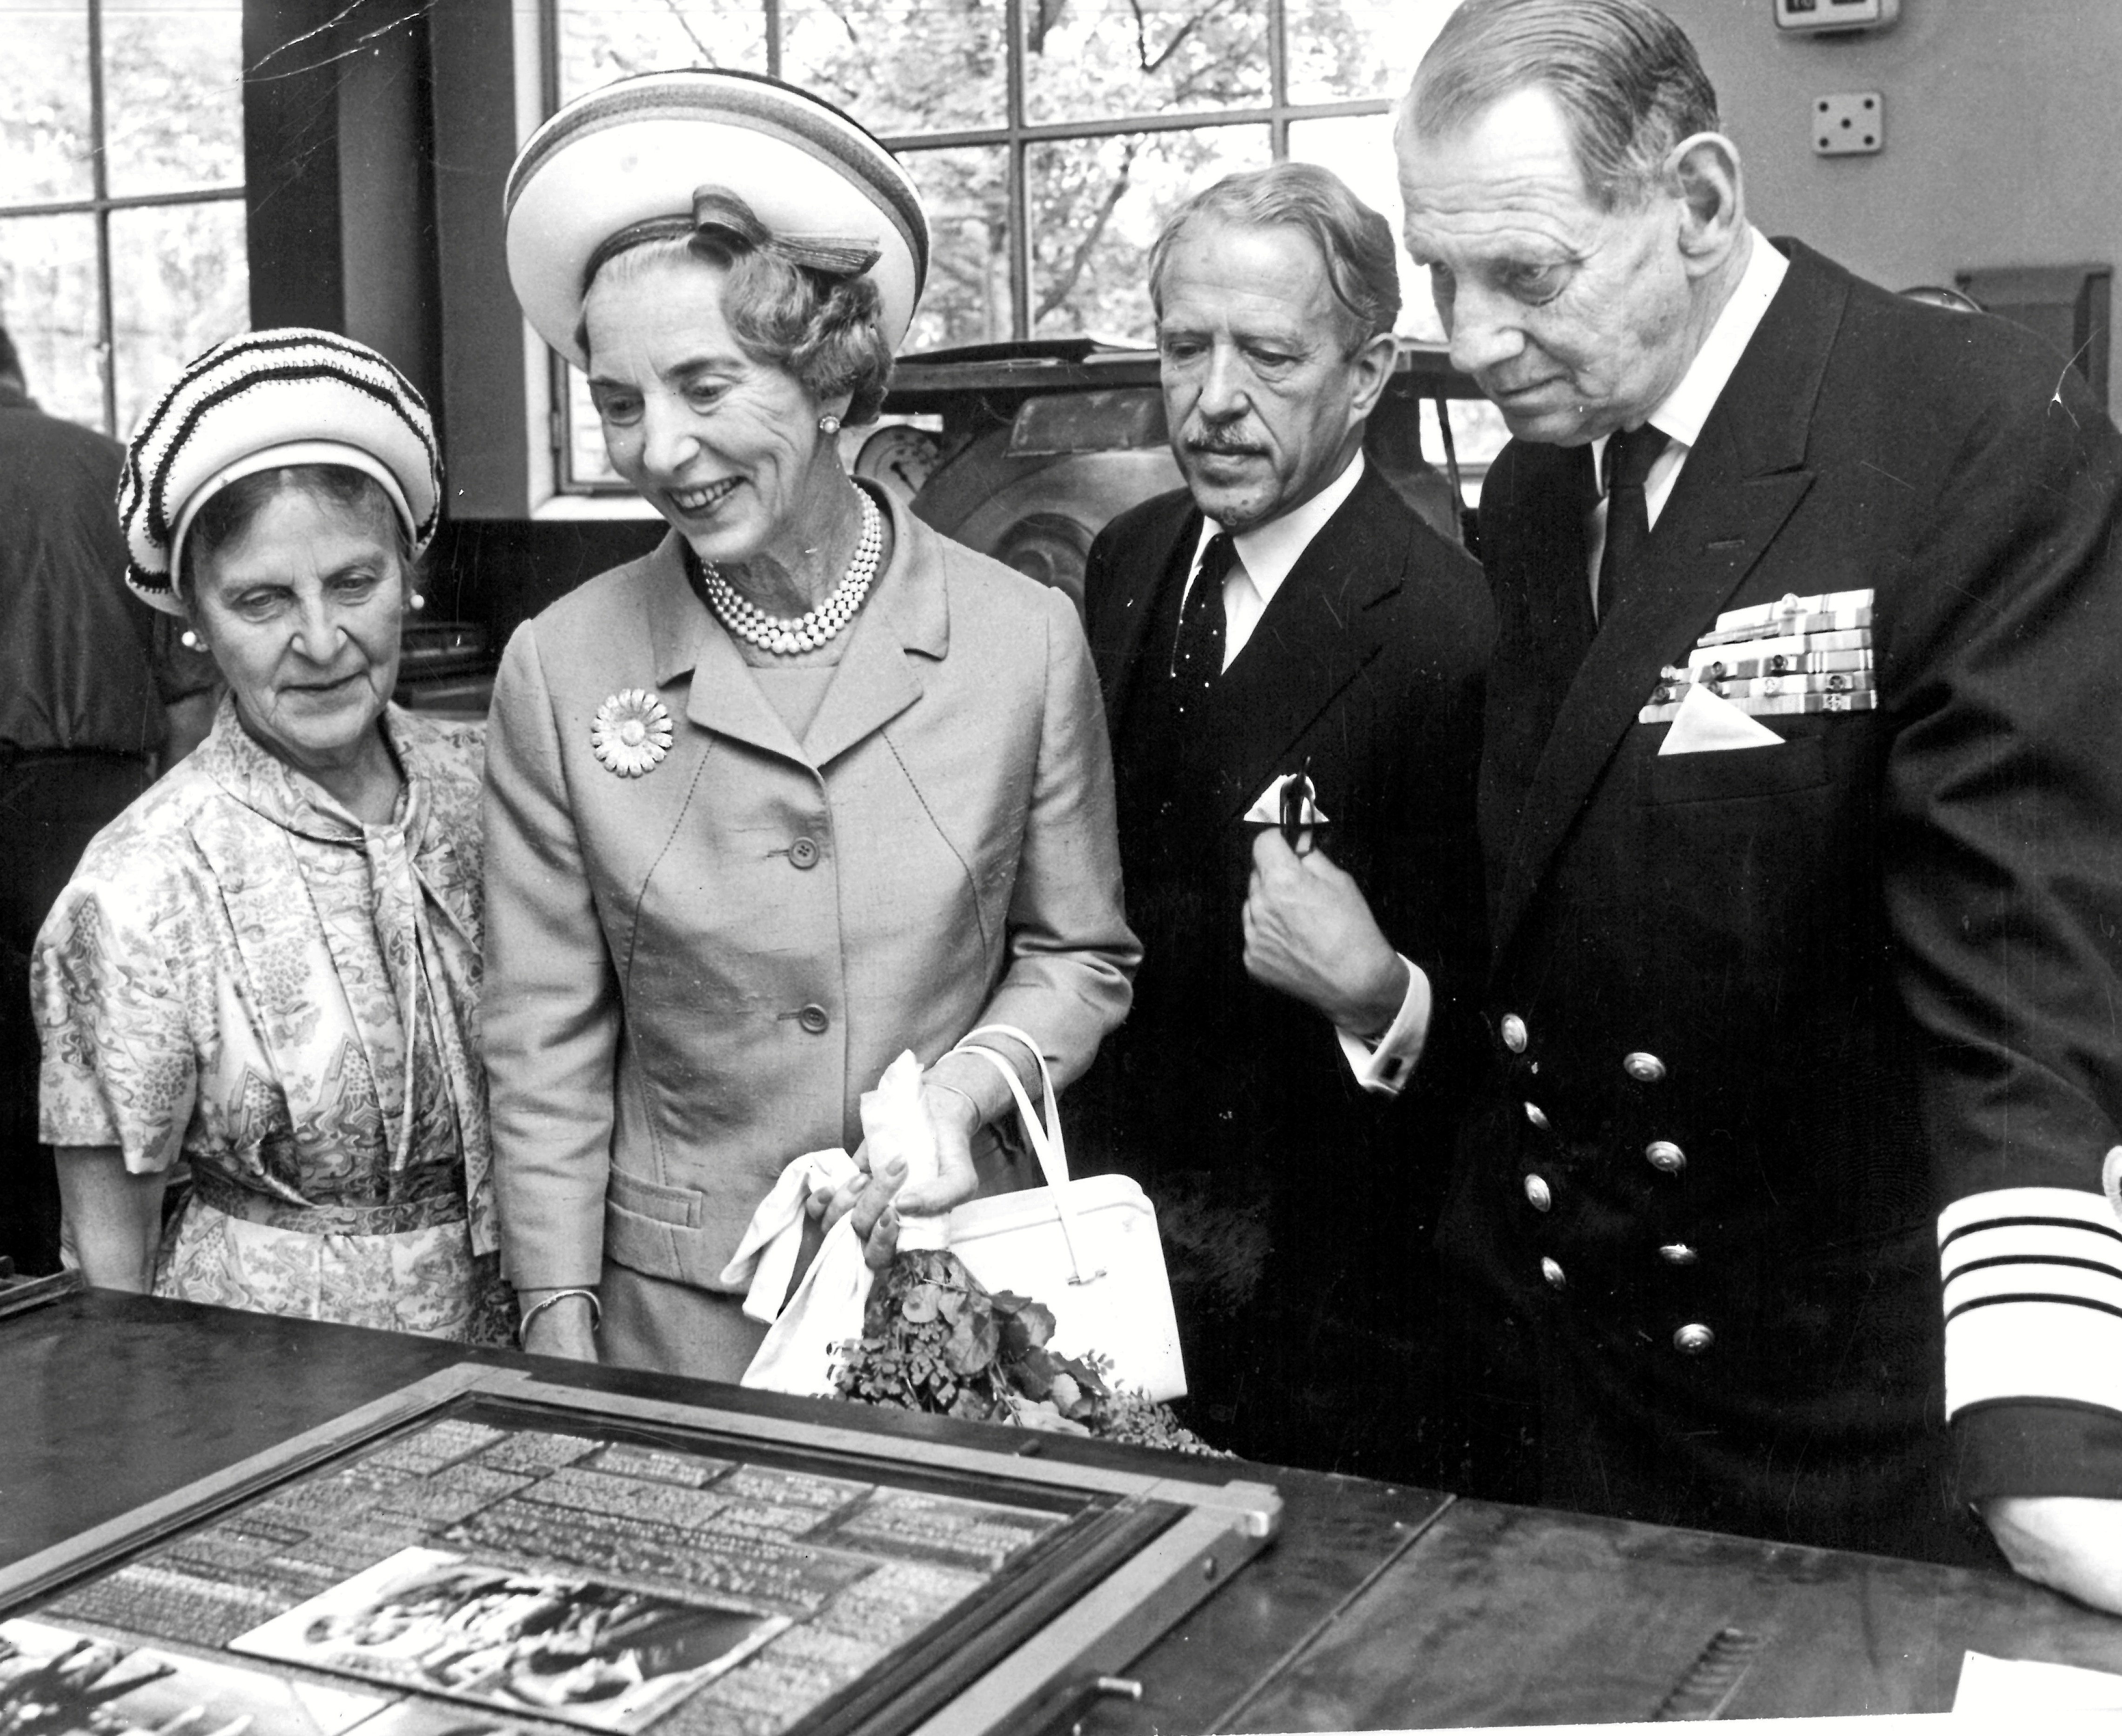 I anledning af virksomhedens 200 års jubilæum i 1967 var der kongeligt besøg. Både Kong Frederik, Dronning Ingrid, Prinsesse Margrethe og Prins Henrik fik en rundvisning.